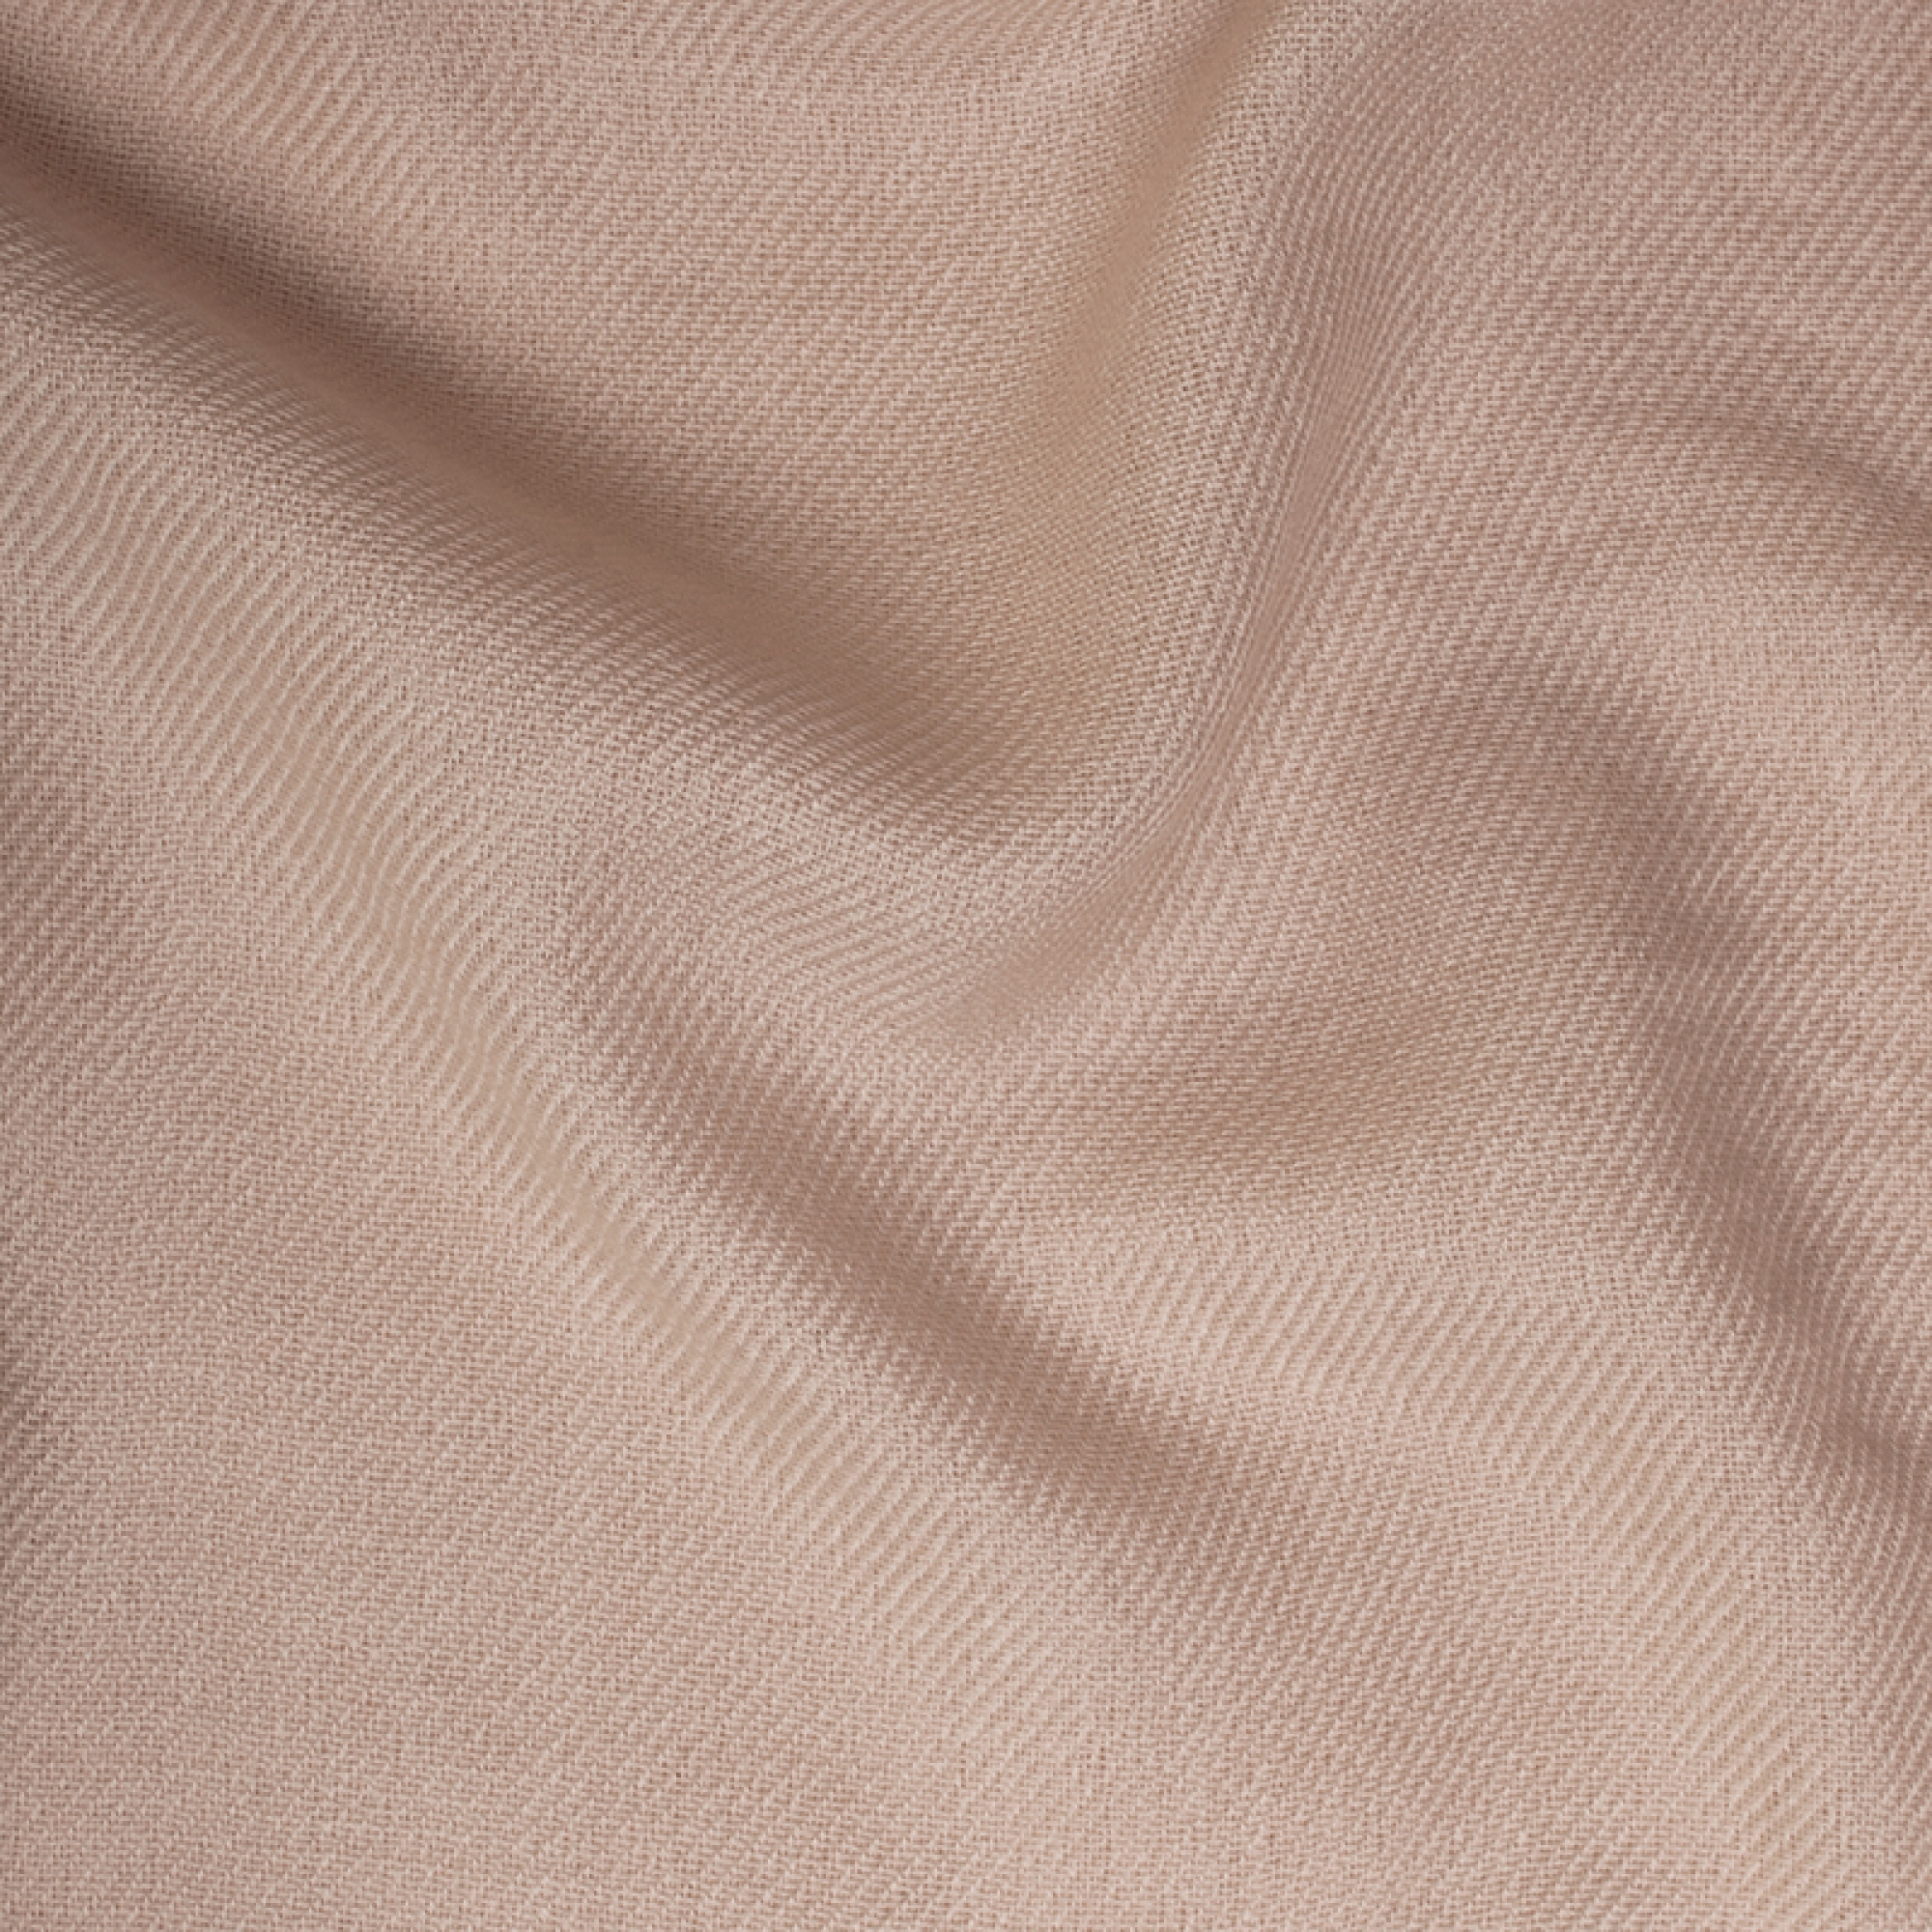 Cachemire accessoires couvertures plaids toodoo plain s 140 x 200 sable 140 x 200 cm